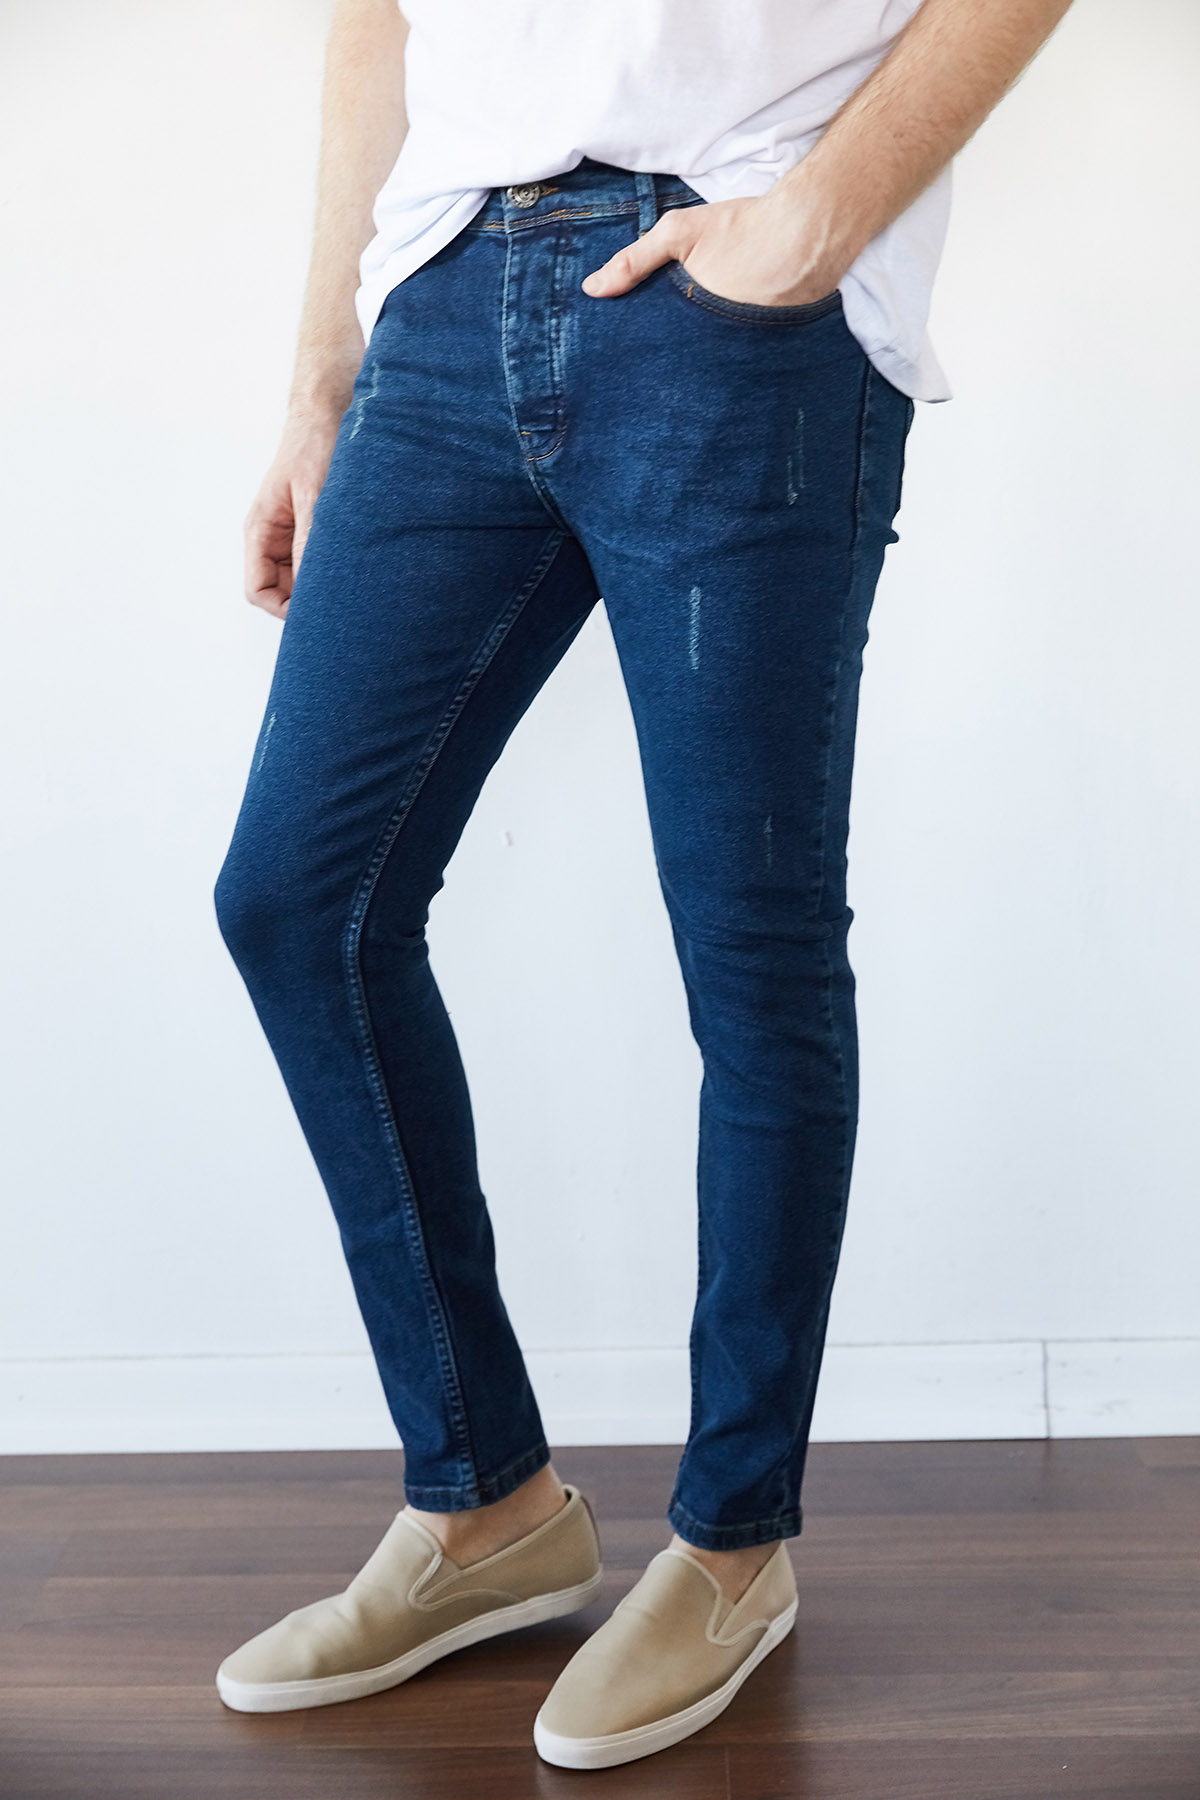 XHAN - Yıkamalı Lacivert Slim Fit Jean Pantolon 1KXE5-44256-48